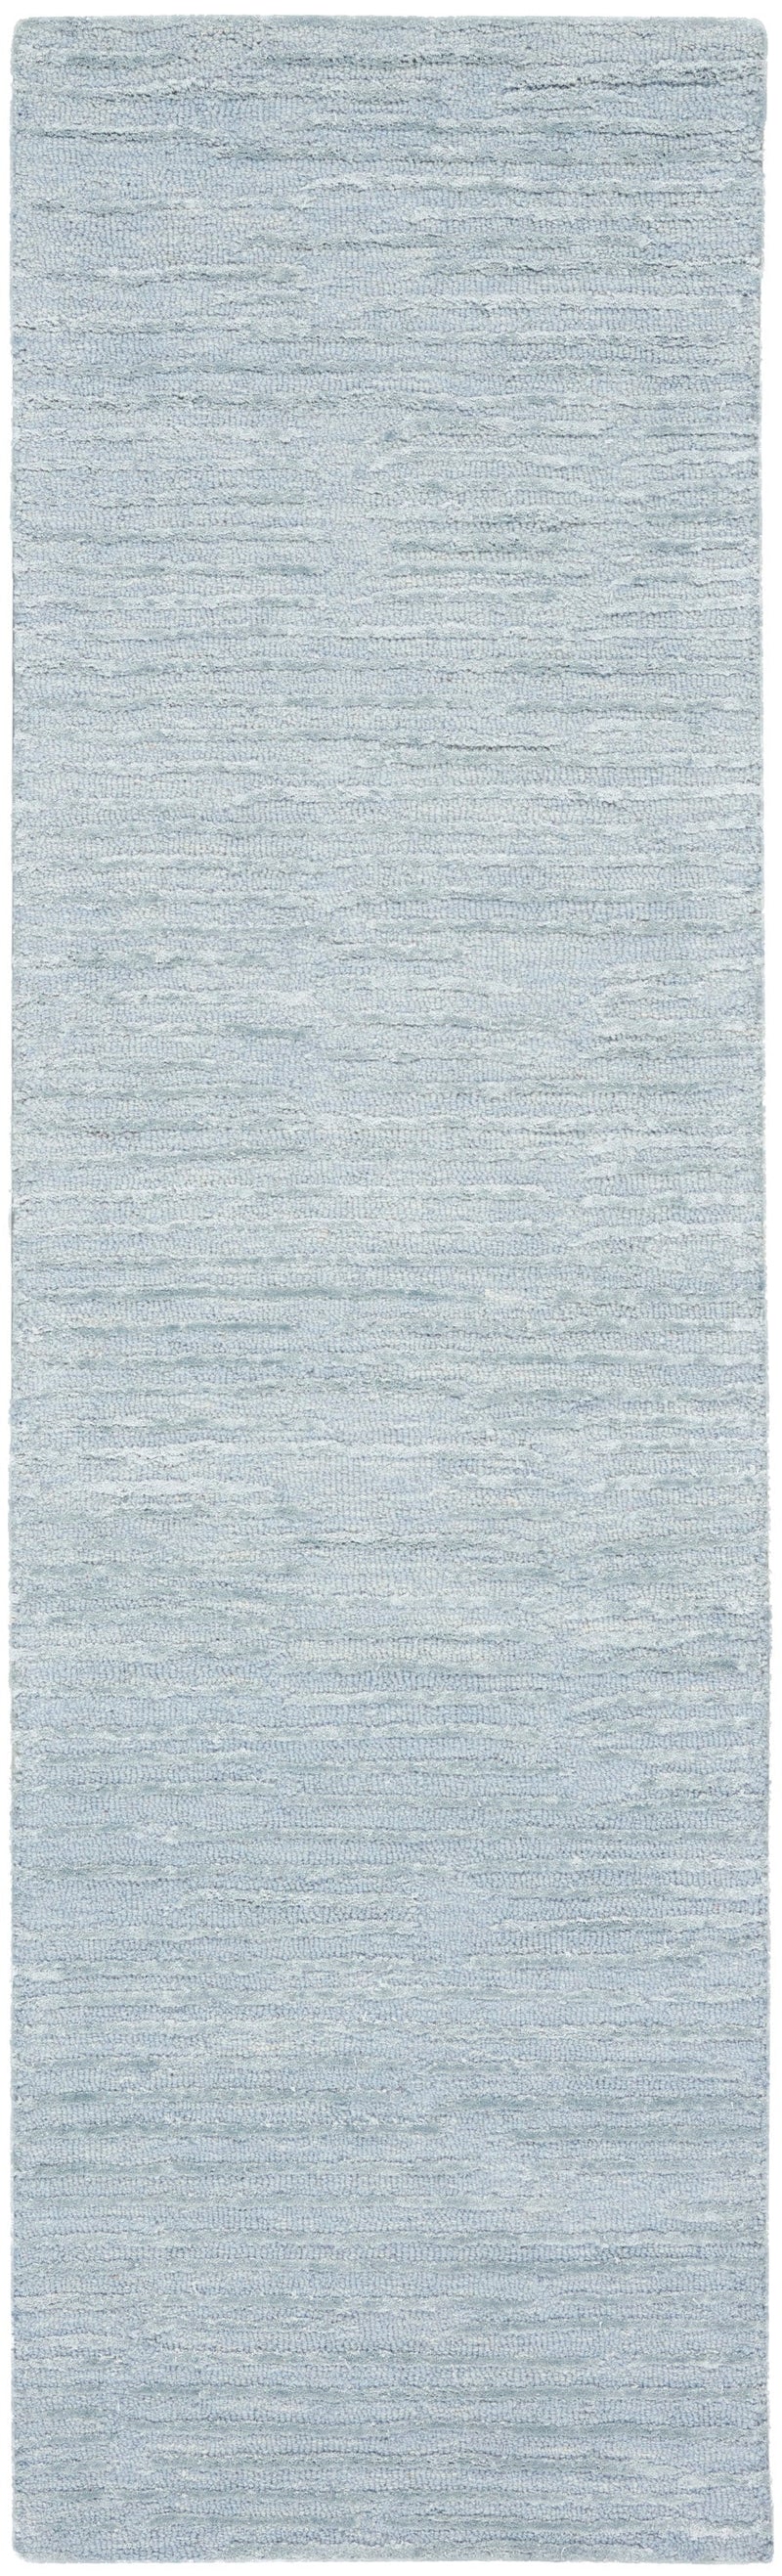 media image for ck010 linear handmade light blue rug by nourison 99446879950 redo 2 277